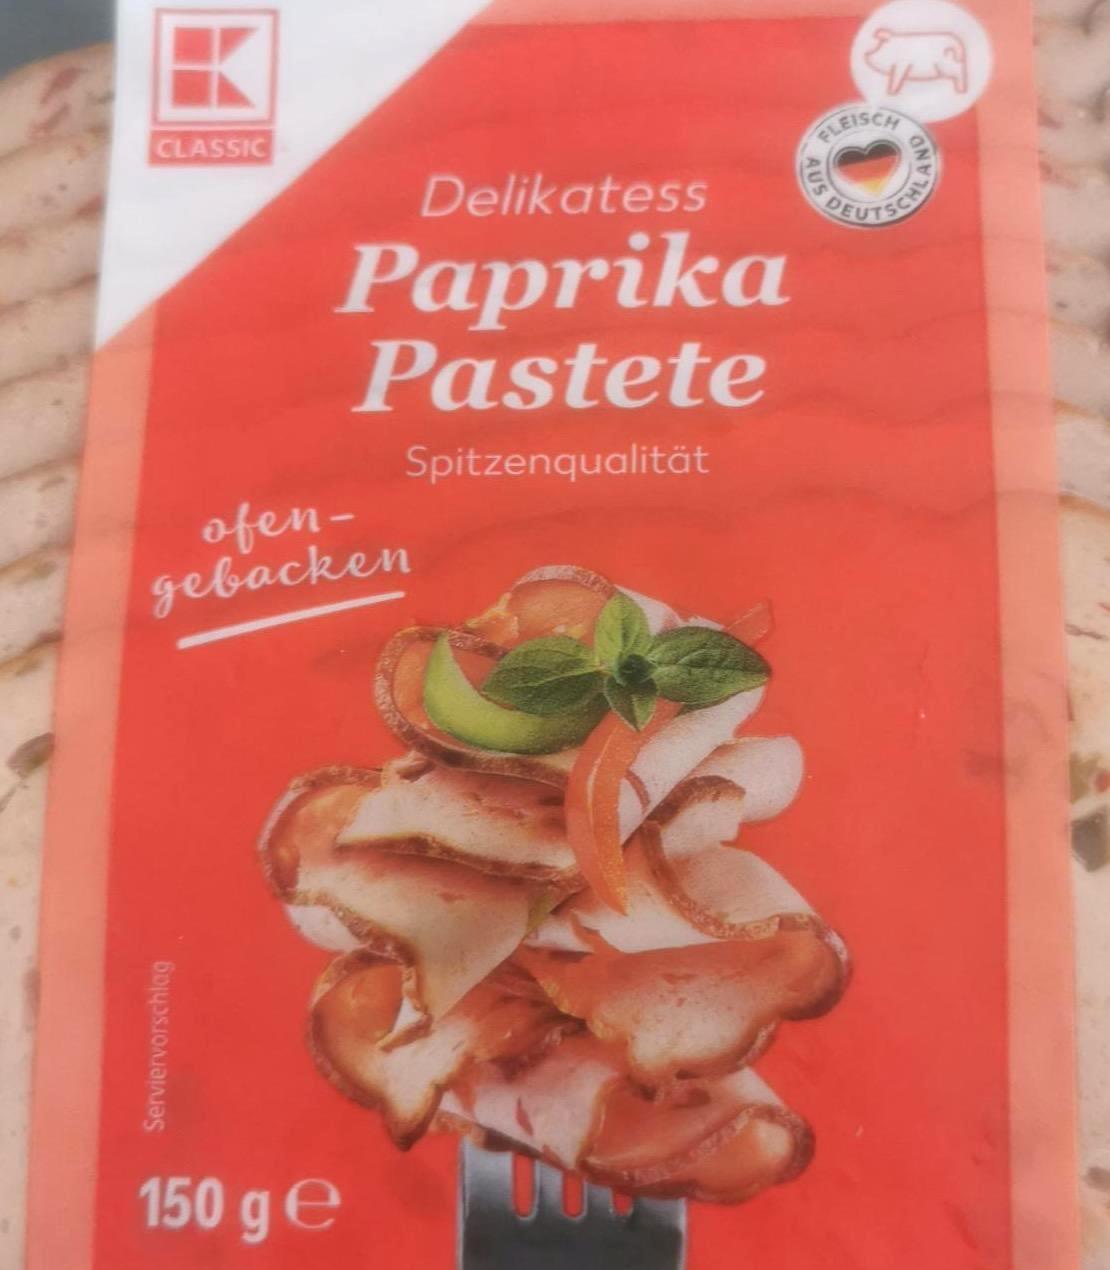 Képek - Delikatess Paprika pastete K-Classic